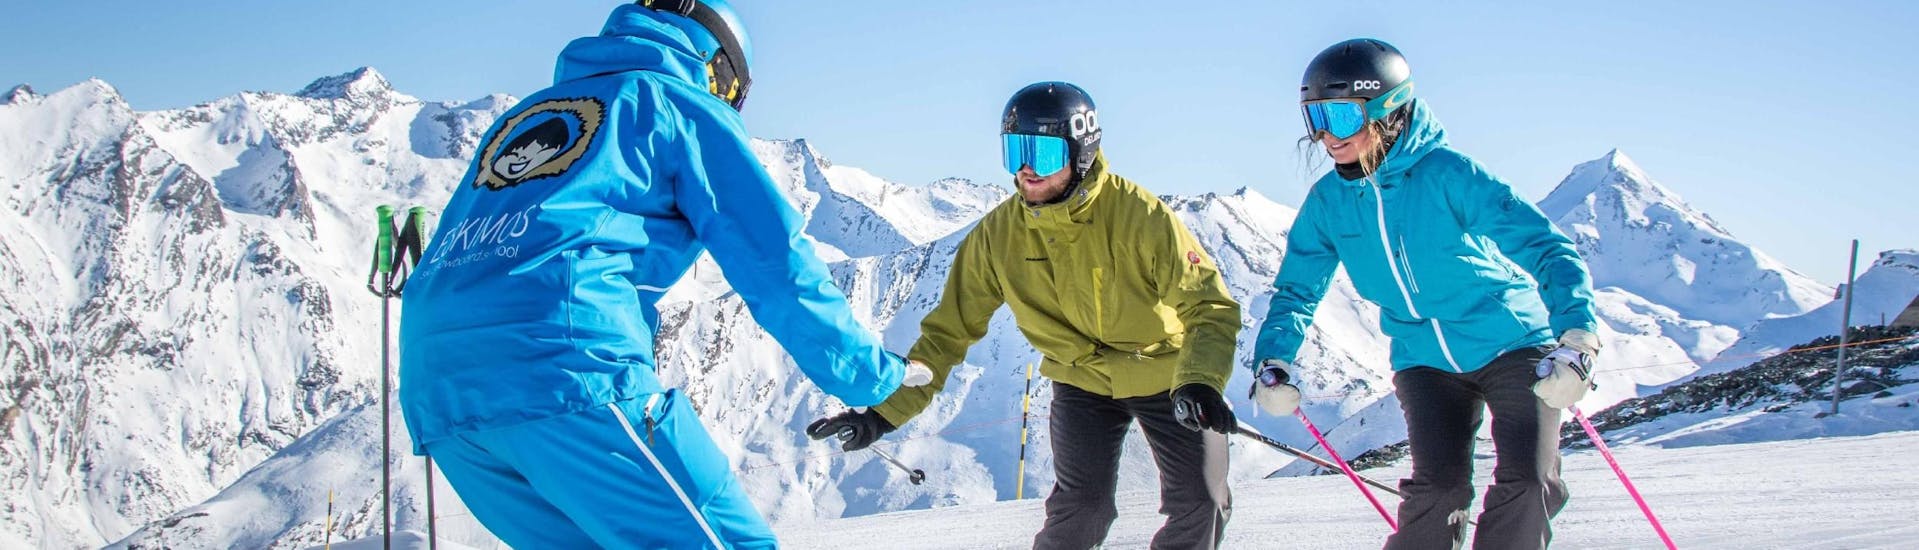 Cours de ski Adultes pour Tous niveaux avec Ski School ESKIMOS Saas-Fee.